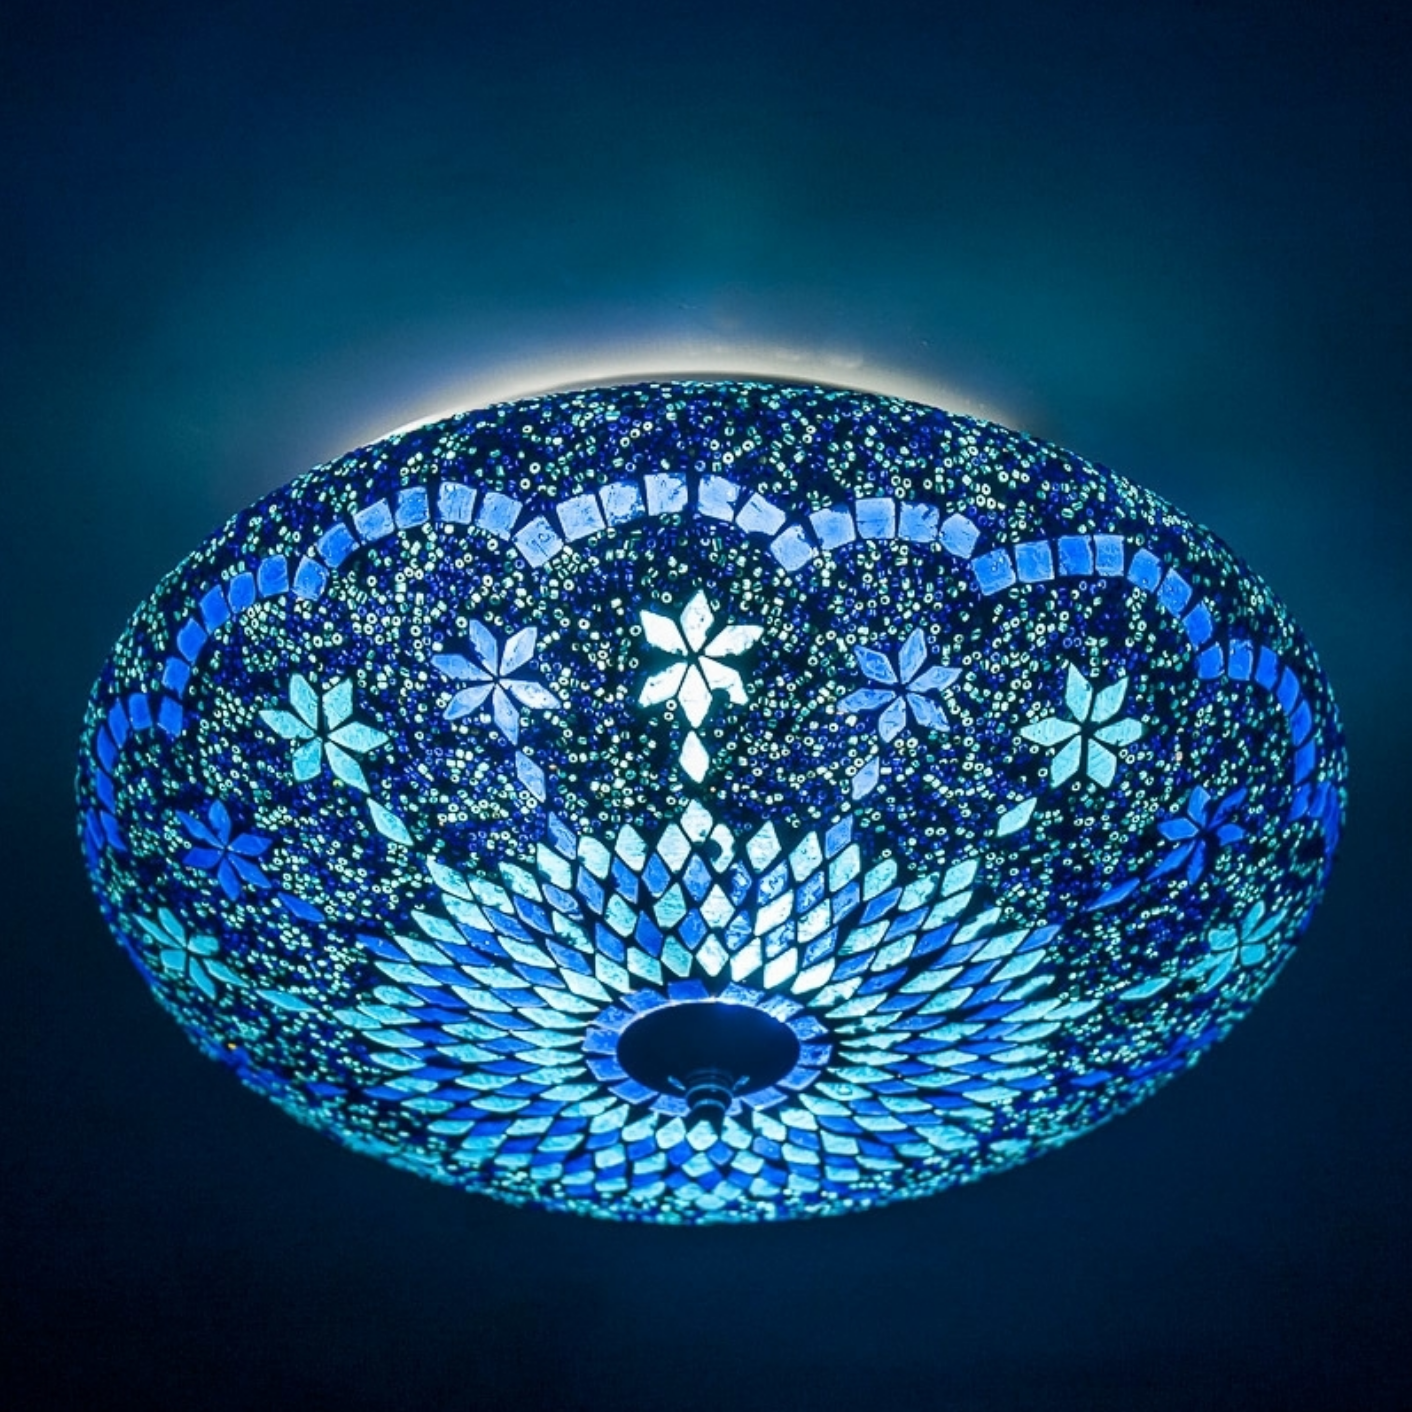 Verfijnen verdwijnen repetitie Marokkaanse plafonniere in blauw glas mozaiek diameter 38 cm. - dePauwWonen